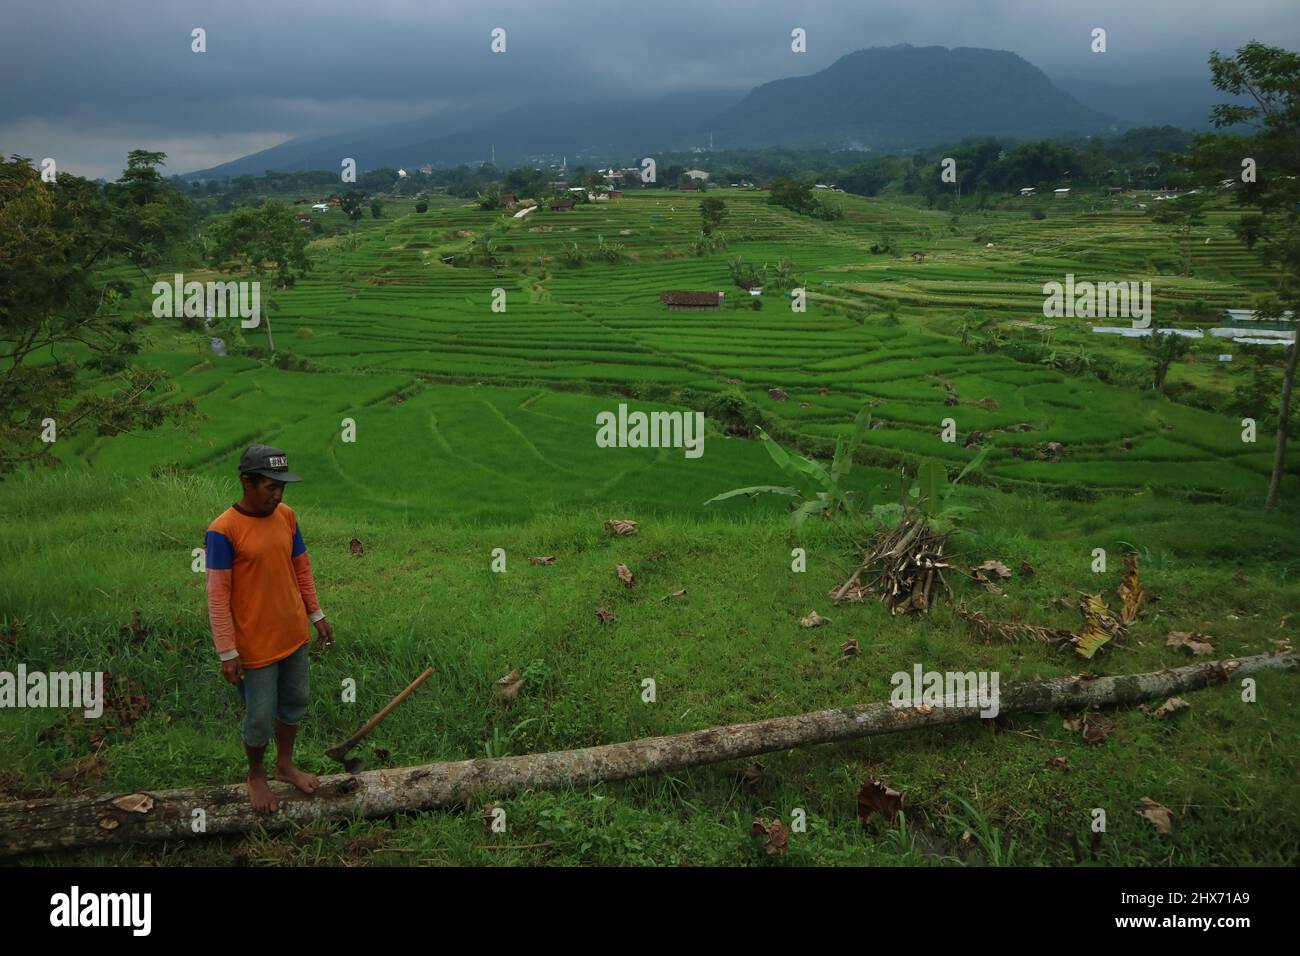 Mojokerto, Indonésie : 22 janvier 202. Un fermier en ricefield, avec une étendue verte de champs de riz en arrière-plan. Idéal pour le papier peint nature. Banque D'Images